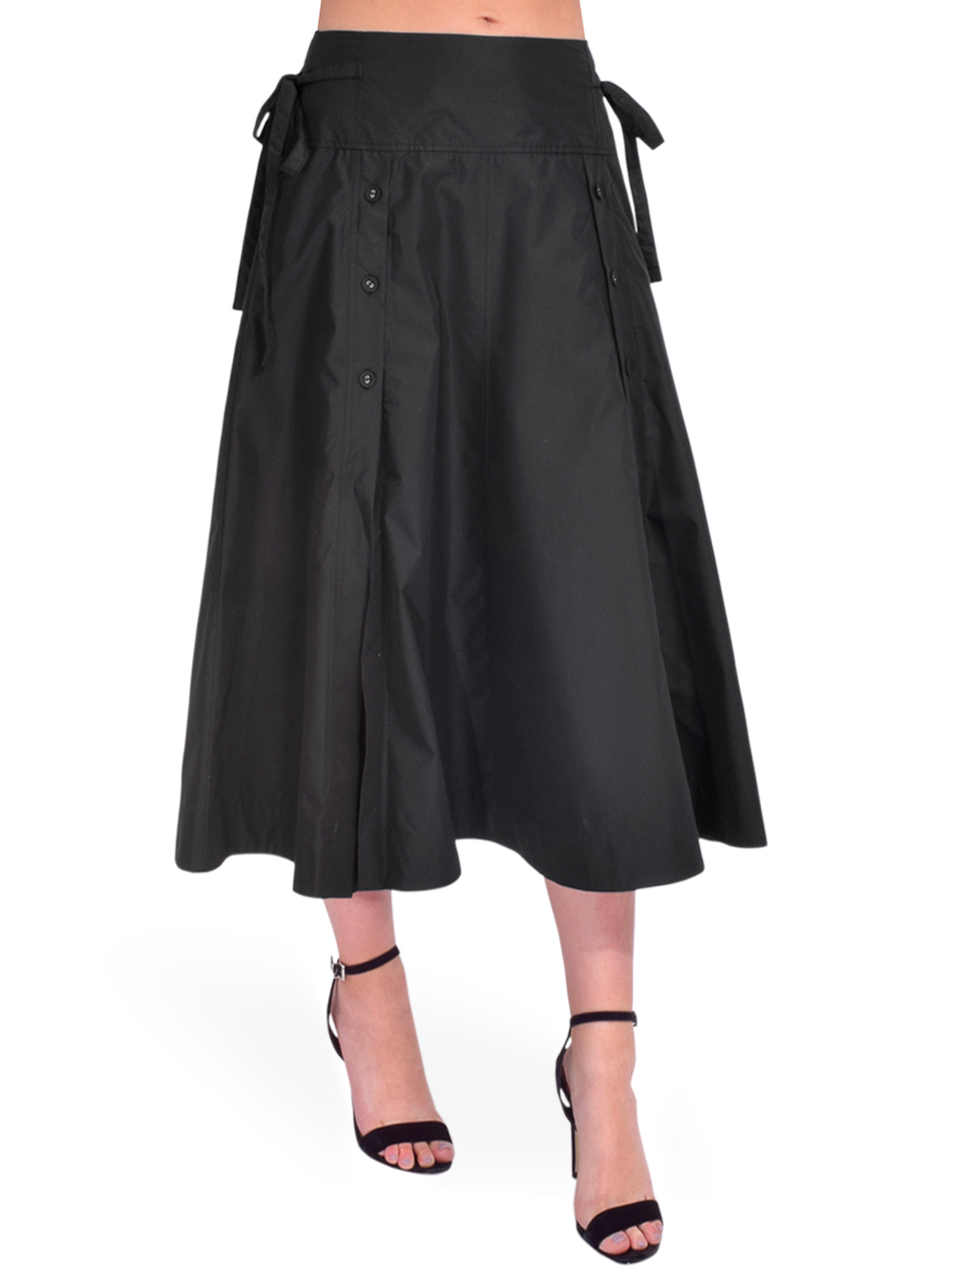 3.1 Phillip Lim Button Front Tie Waist Midi Skirt in Black Side View 